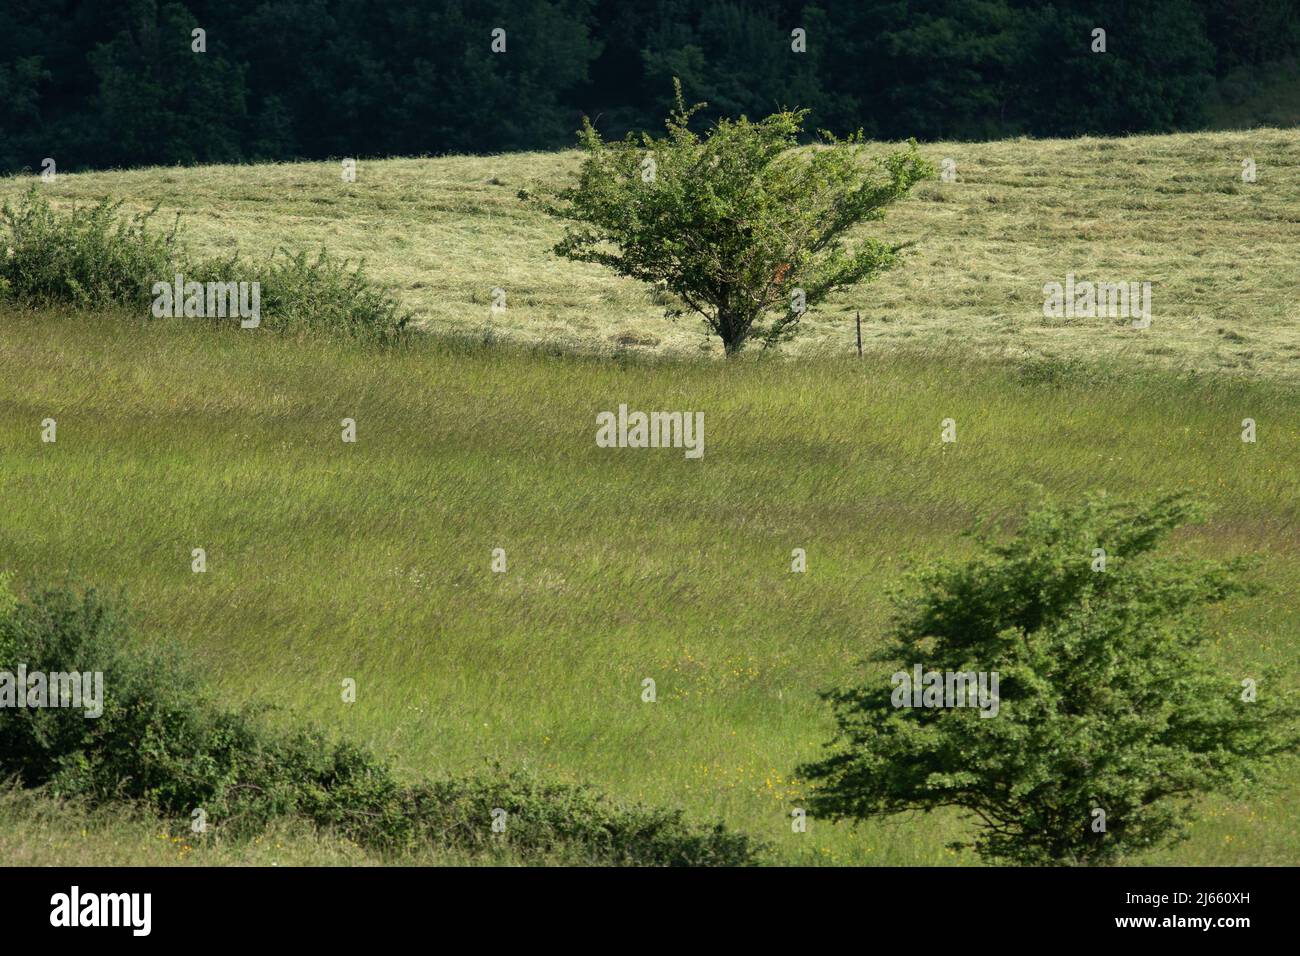 Un arbre au milieu d'un champ avec différent ton de couleur verte Stock Photo